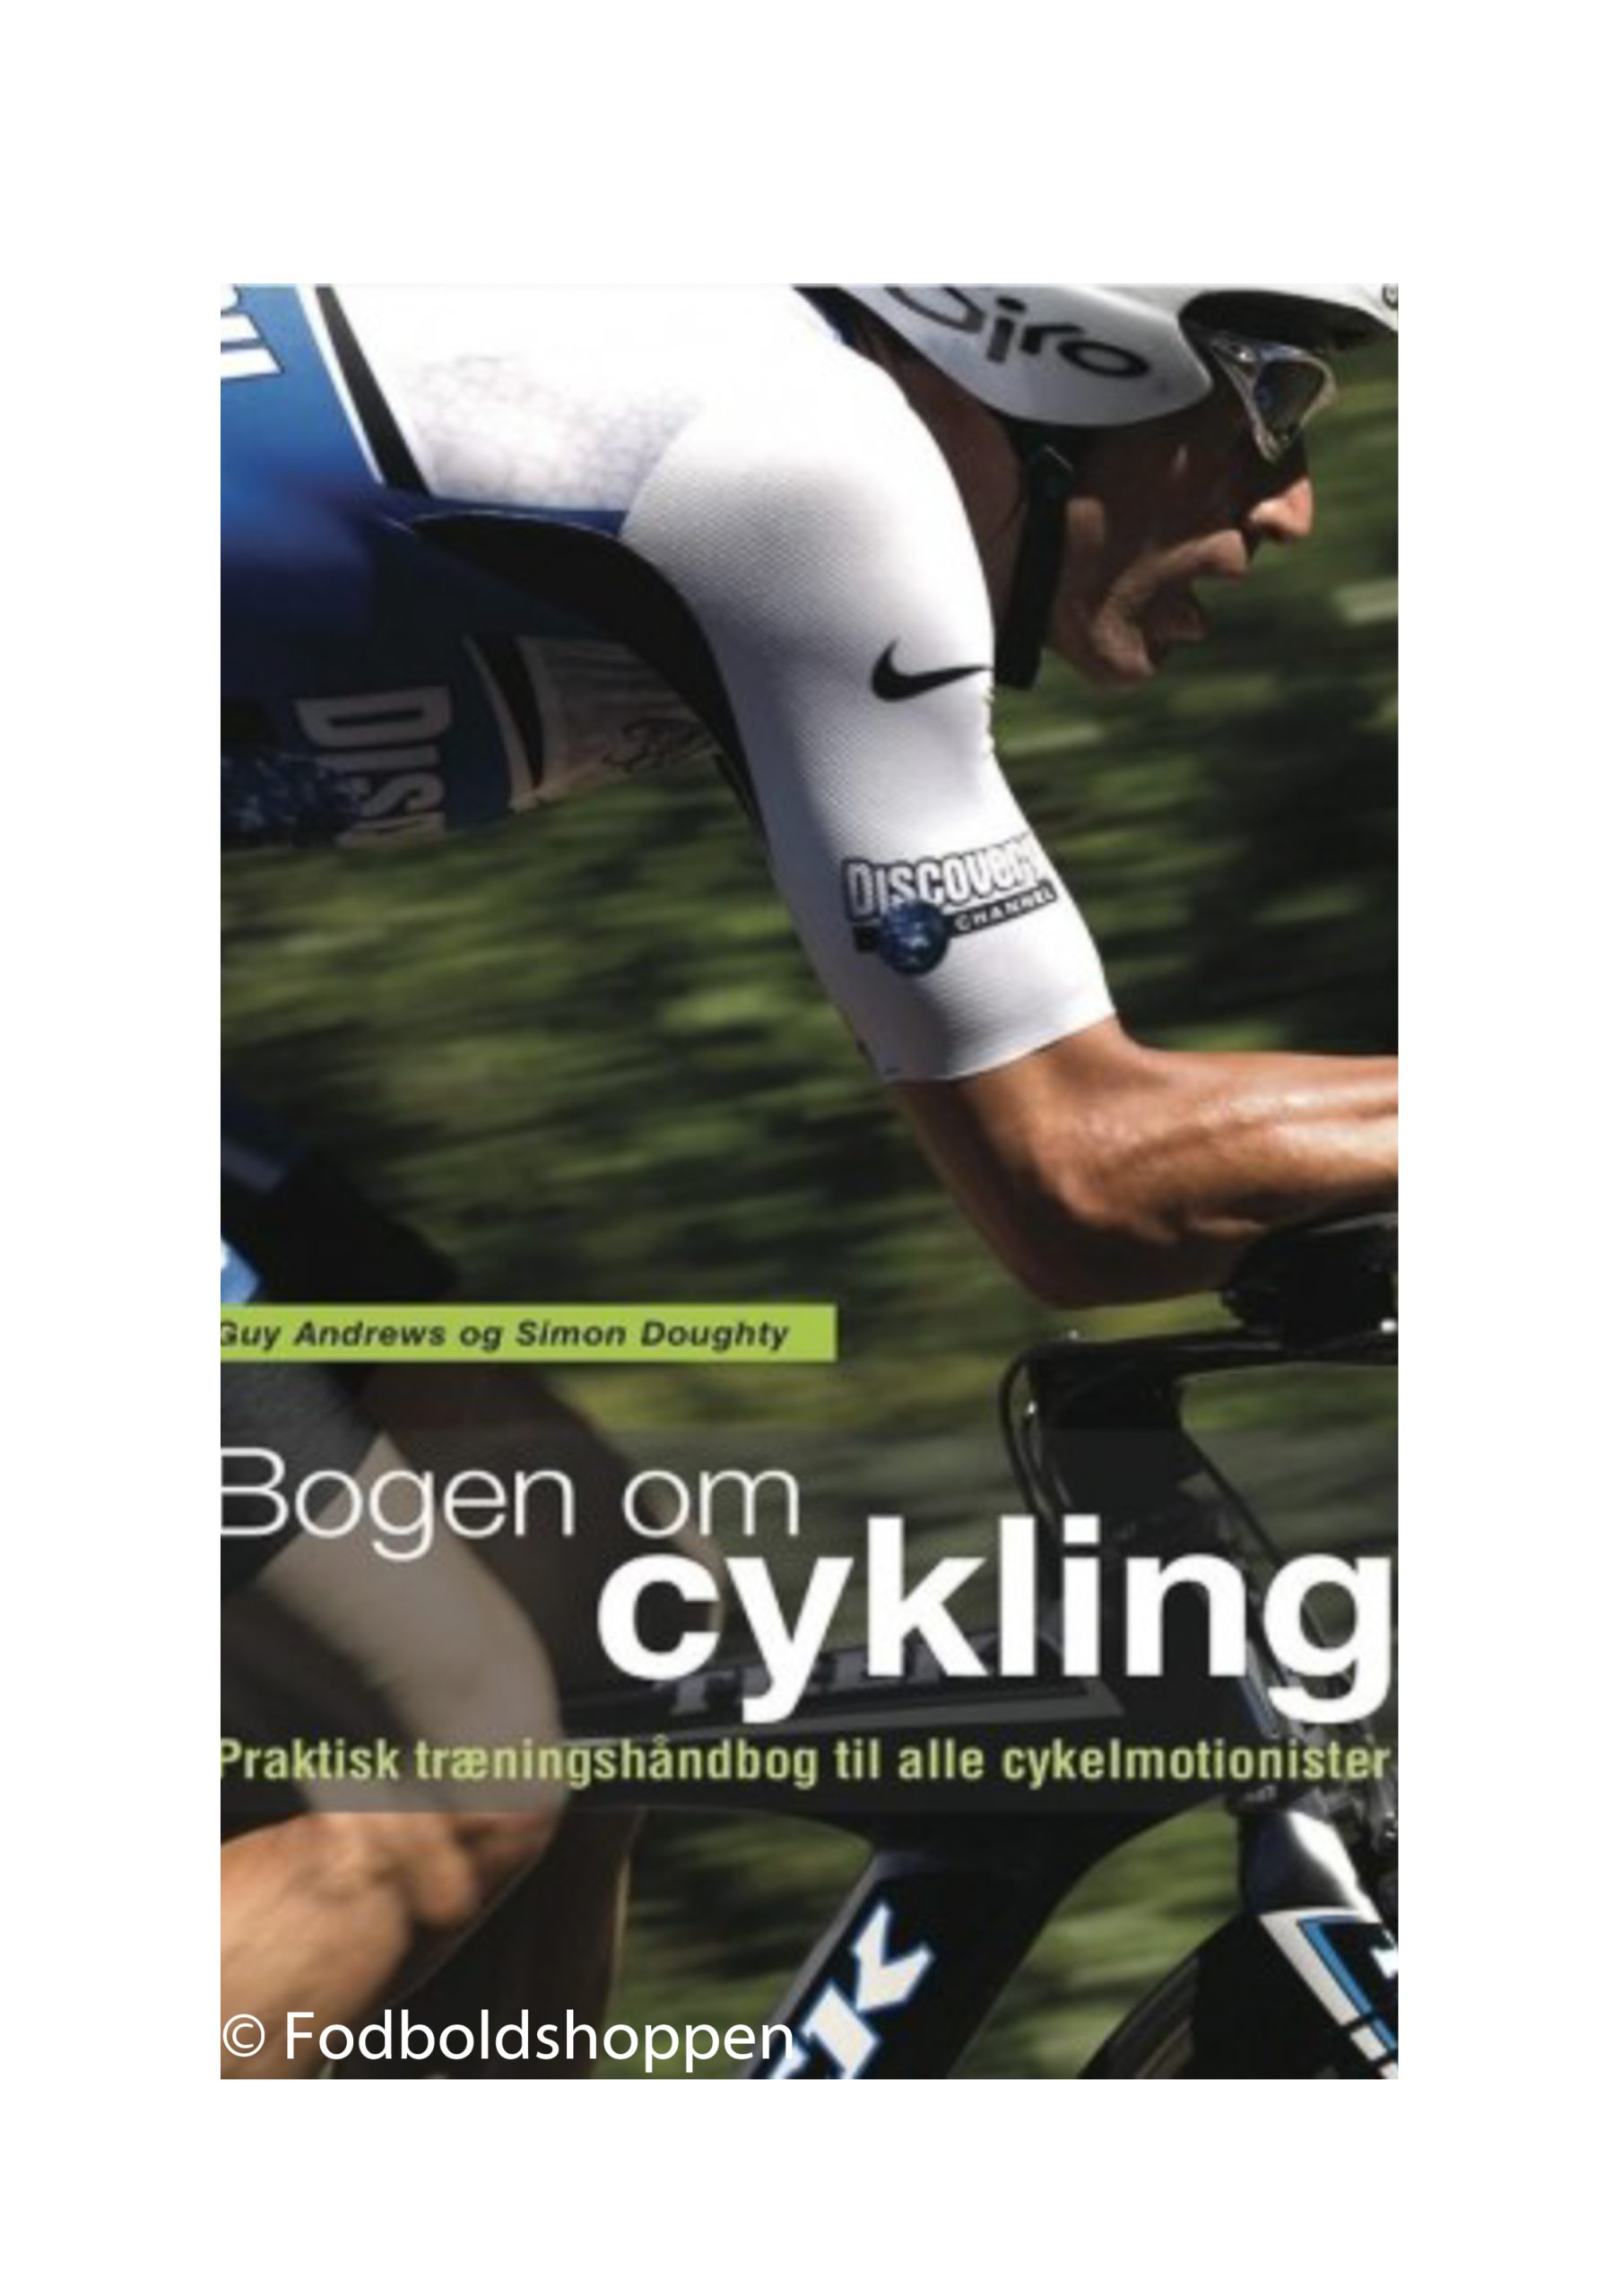 Skinnende forbrydelse couscous Bogen om cykling - Praktisk træningshåndbog - Fodboldshoppen